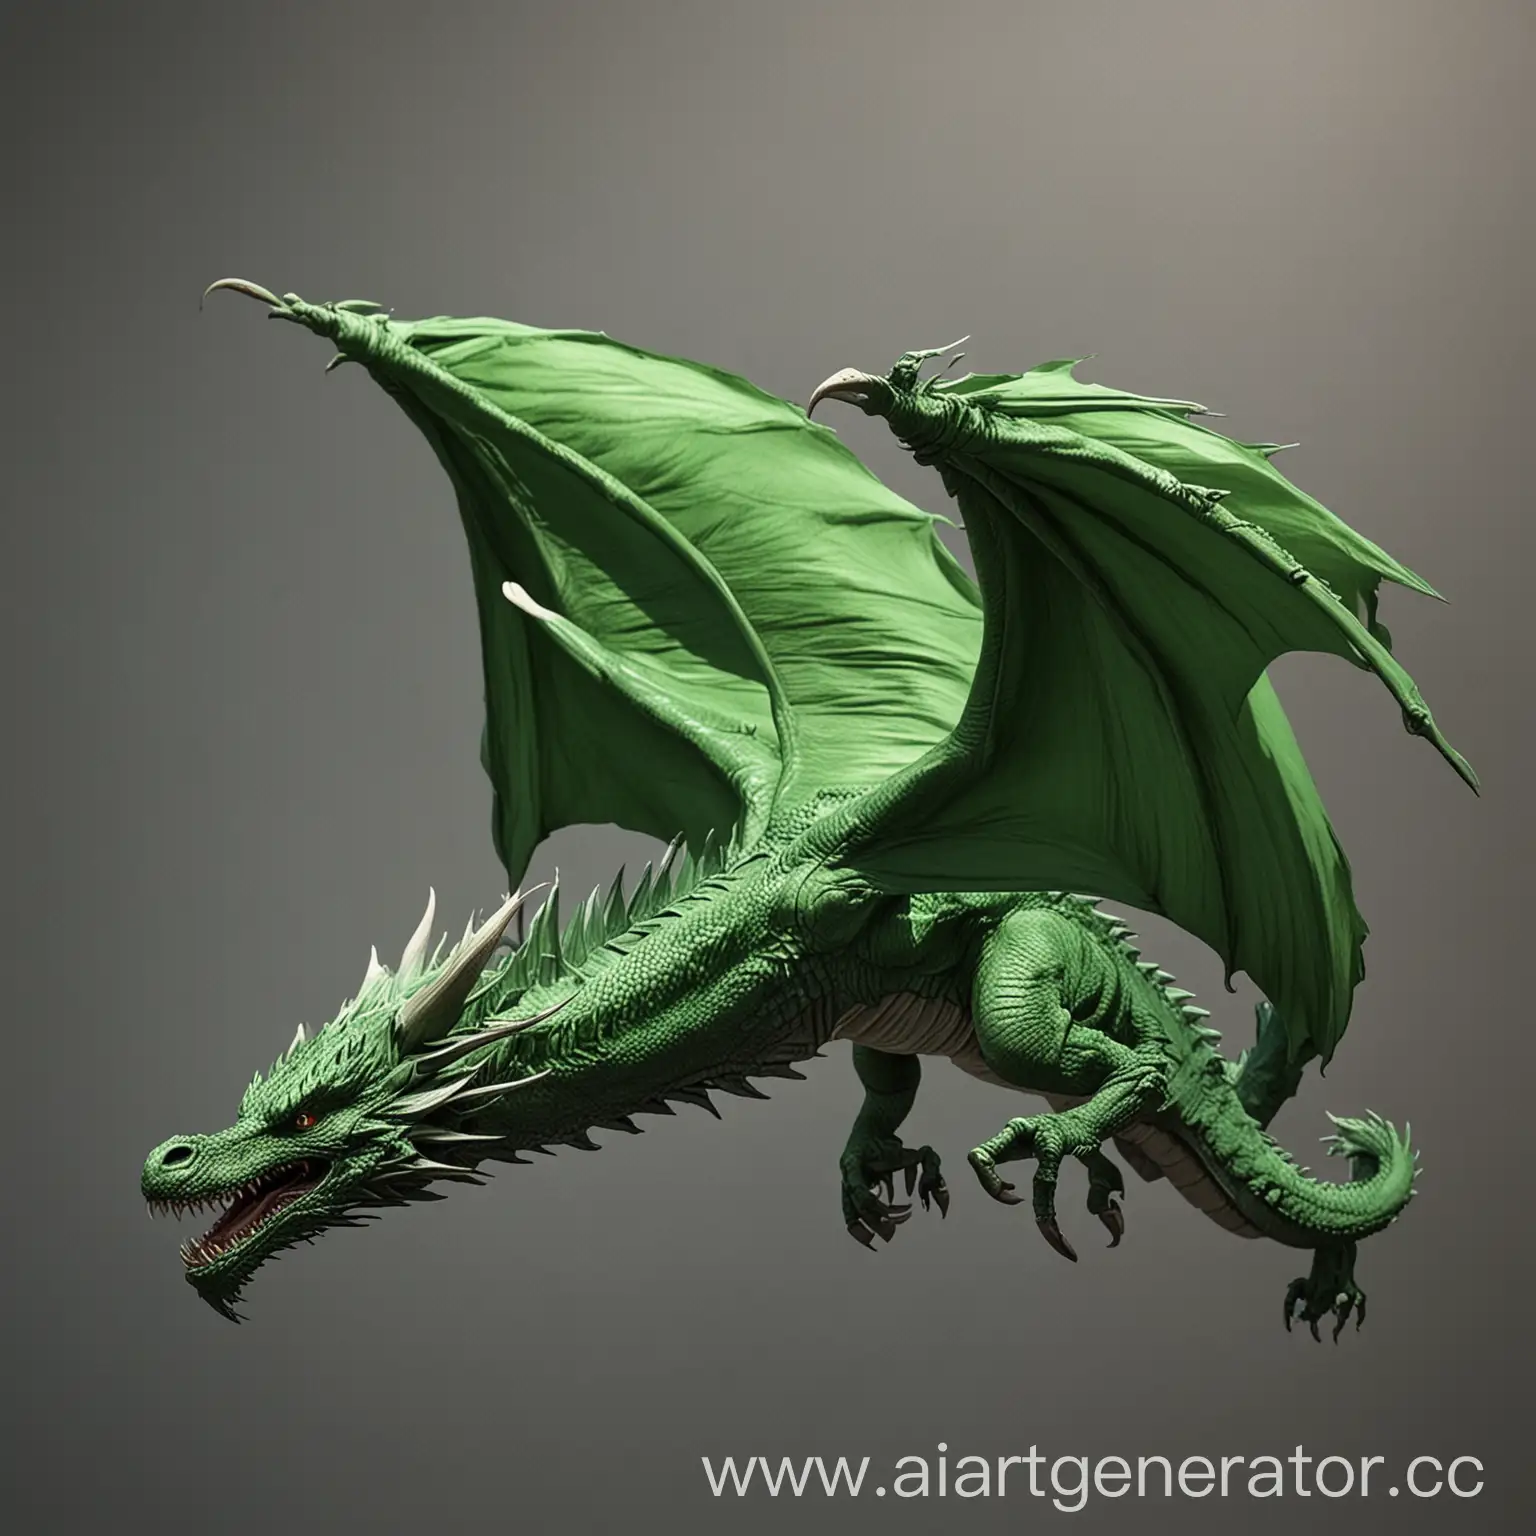 Дракон - зелёного цвета, Дракон длинной до 8м, Дракон имел бы телосложение для быстрого полёта